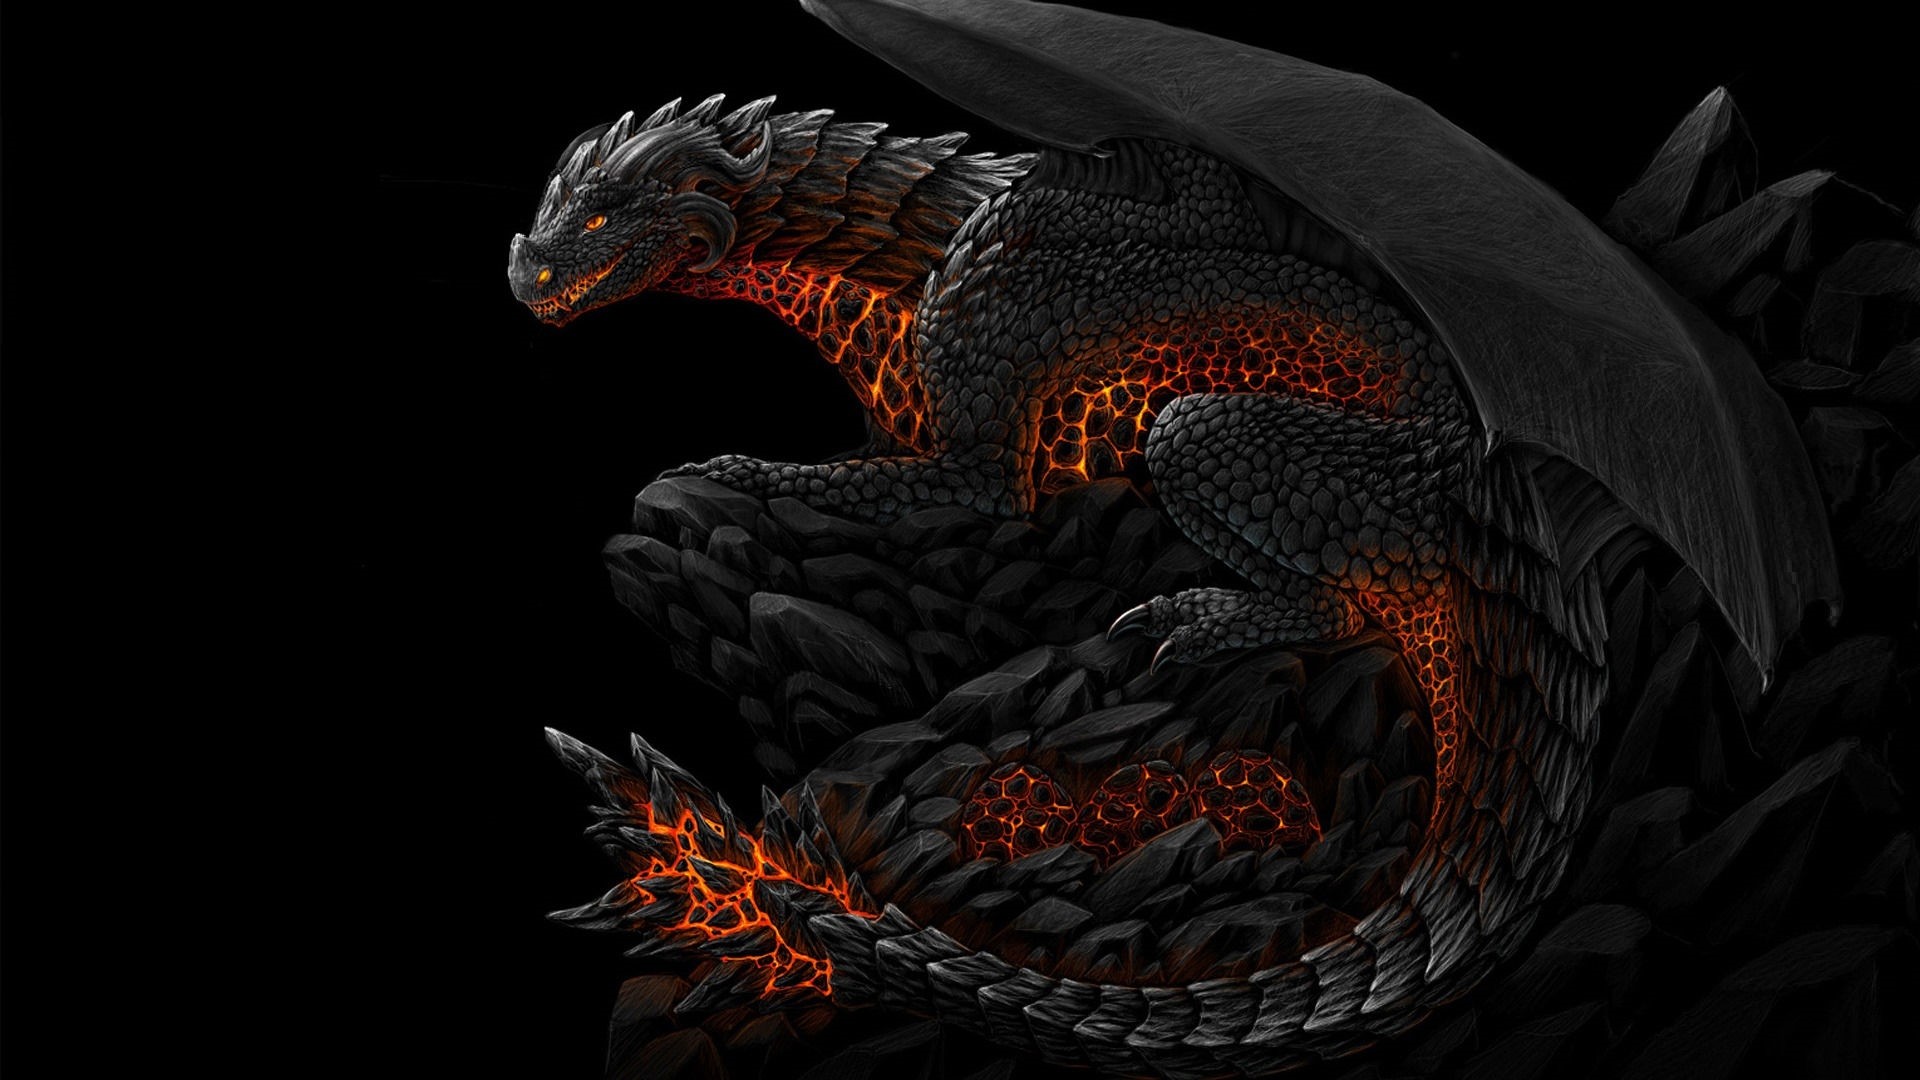 1920x1080 ... dragon_pattern_neon_shadows_39054_ Cool Dragon Wallpapers  dragon hd_063724262_21